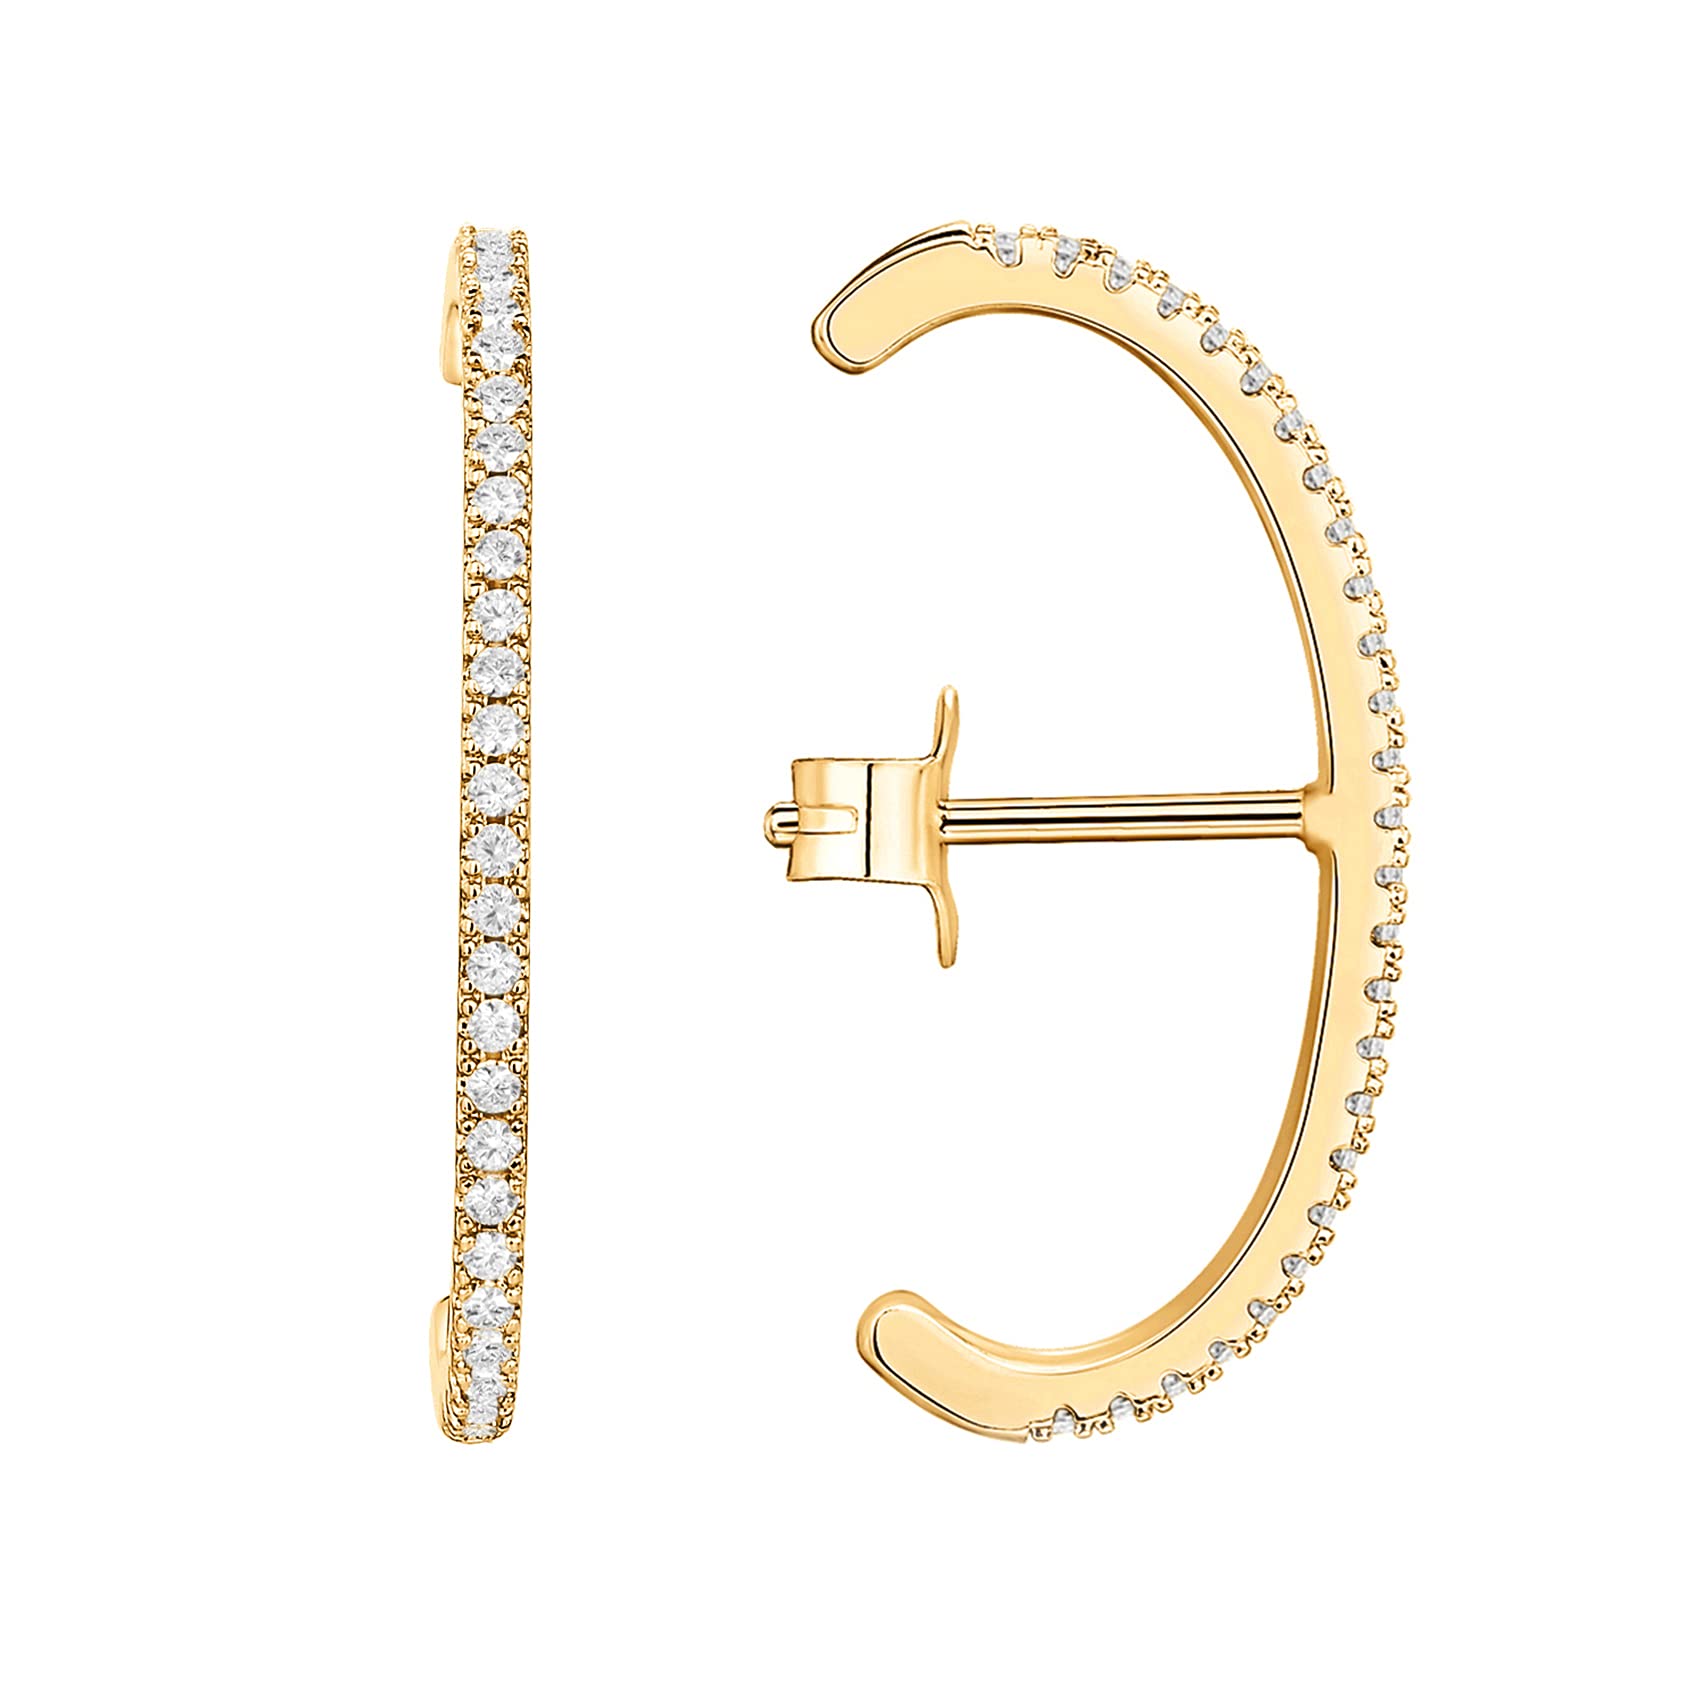 PAVOI 14K Gold Plated 925 Sterling Silver Post Minimalist Suspender Ear Cuff Earrings for Women | Wrap Earlobe Studs